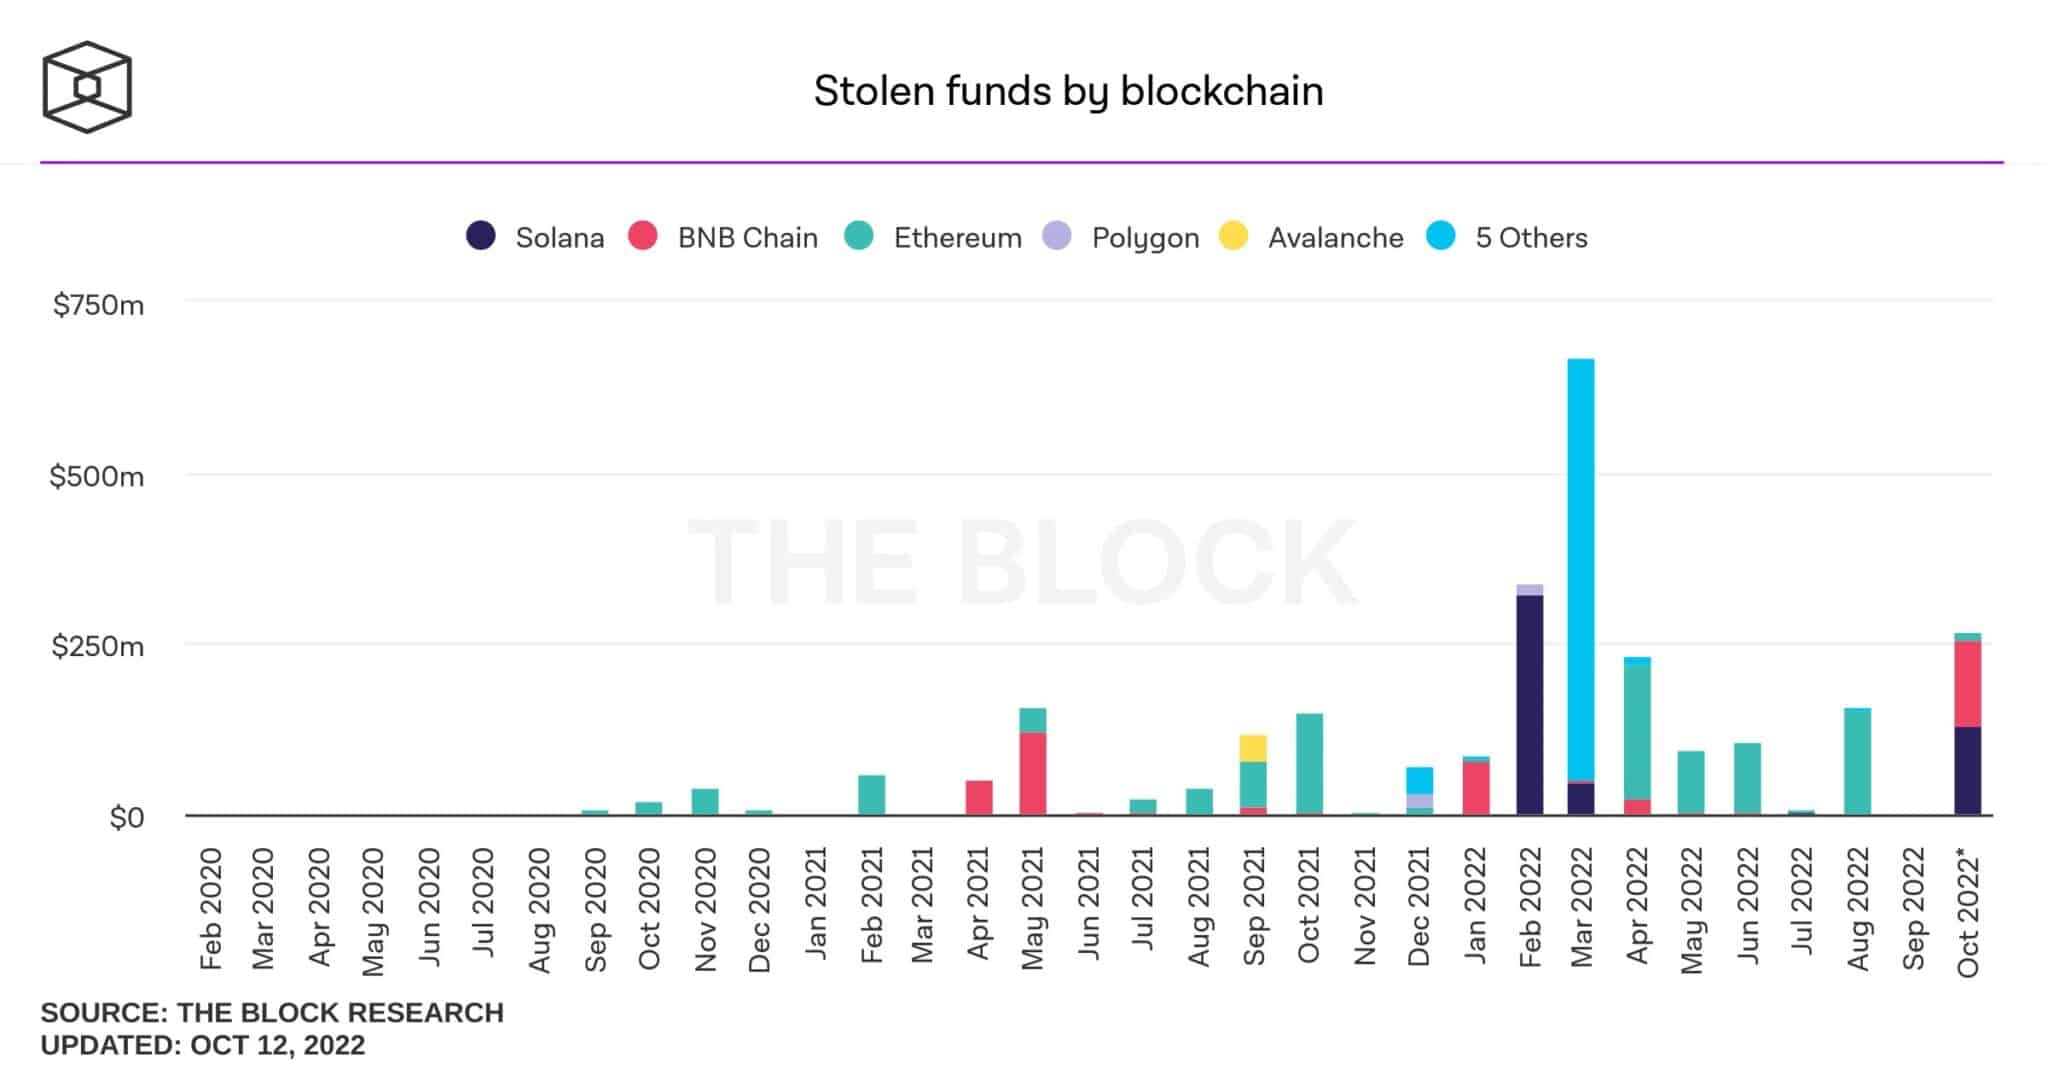 Importes robados ordenados por periodo y blockchain